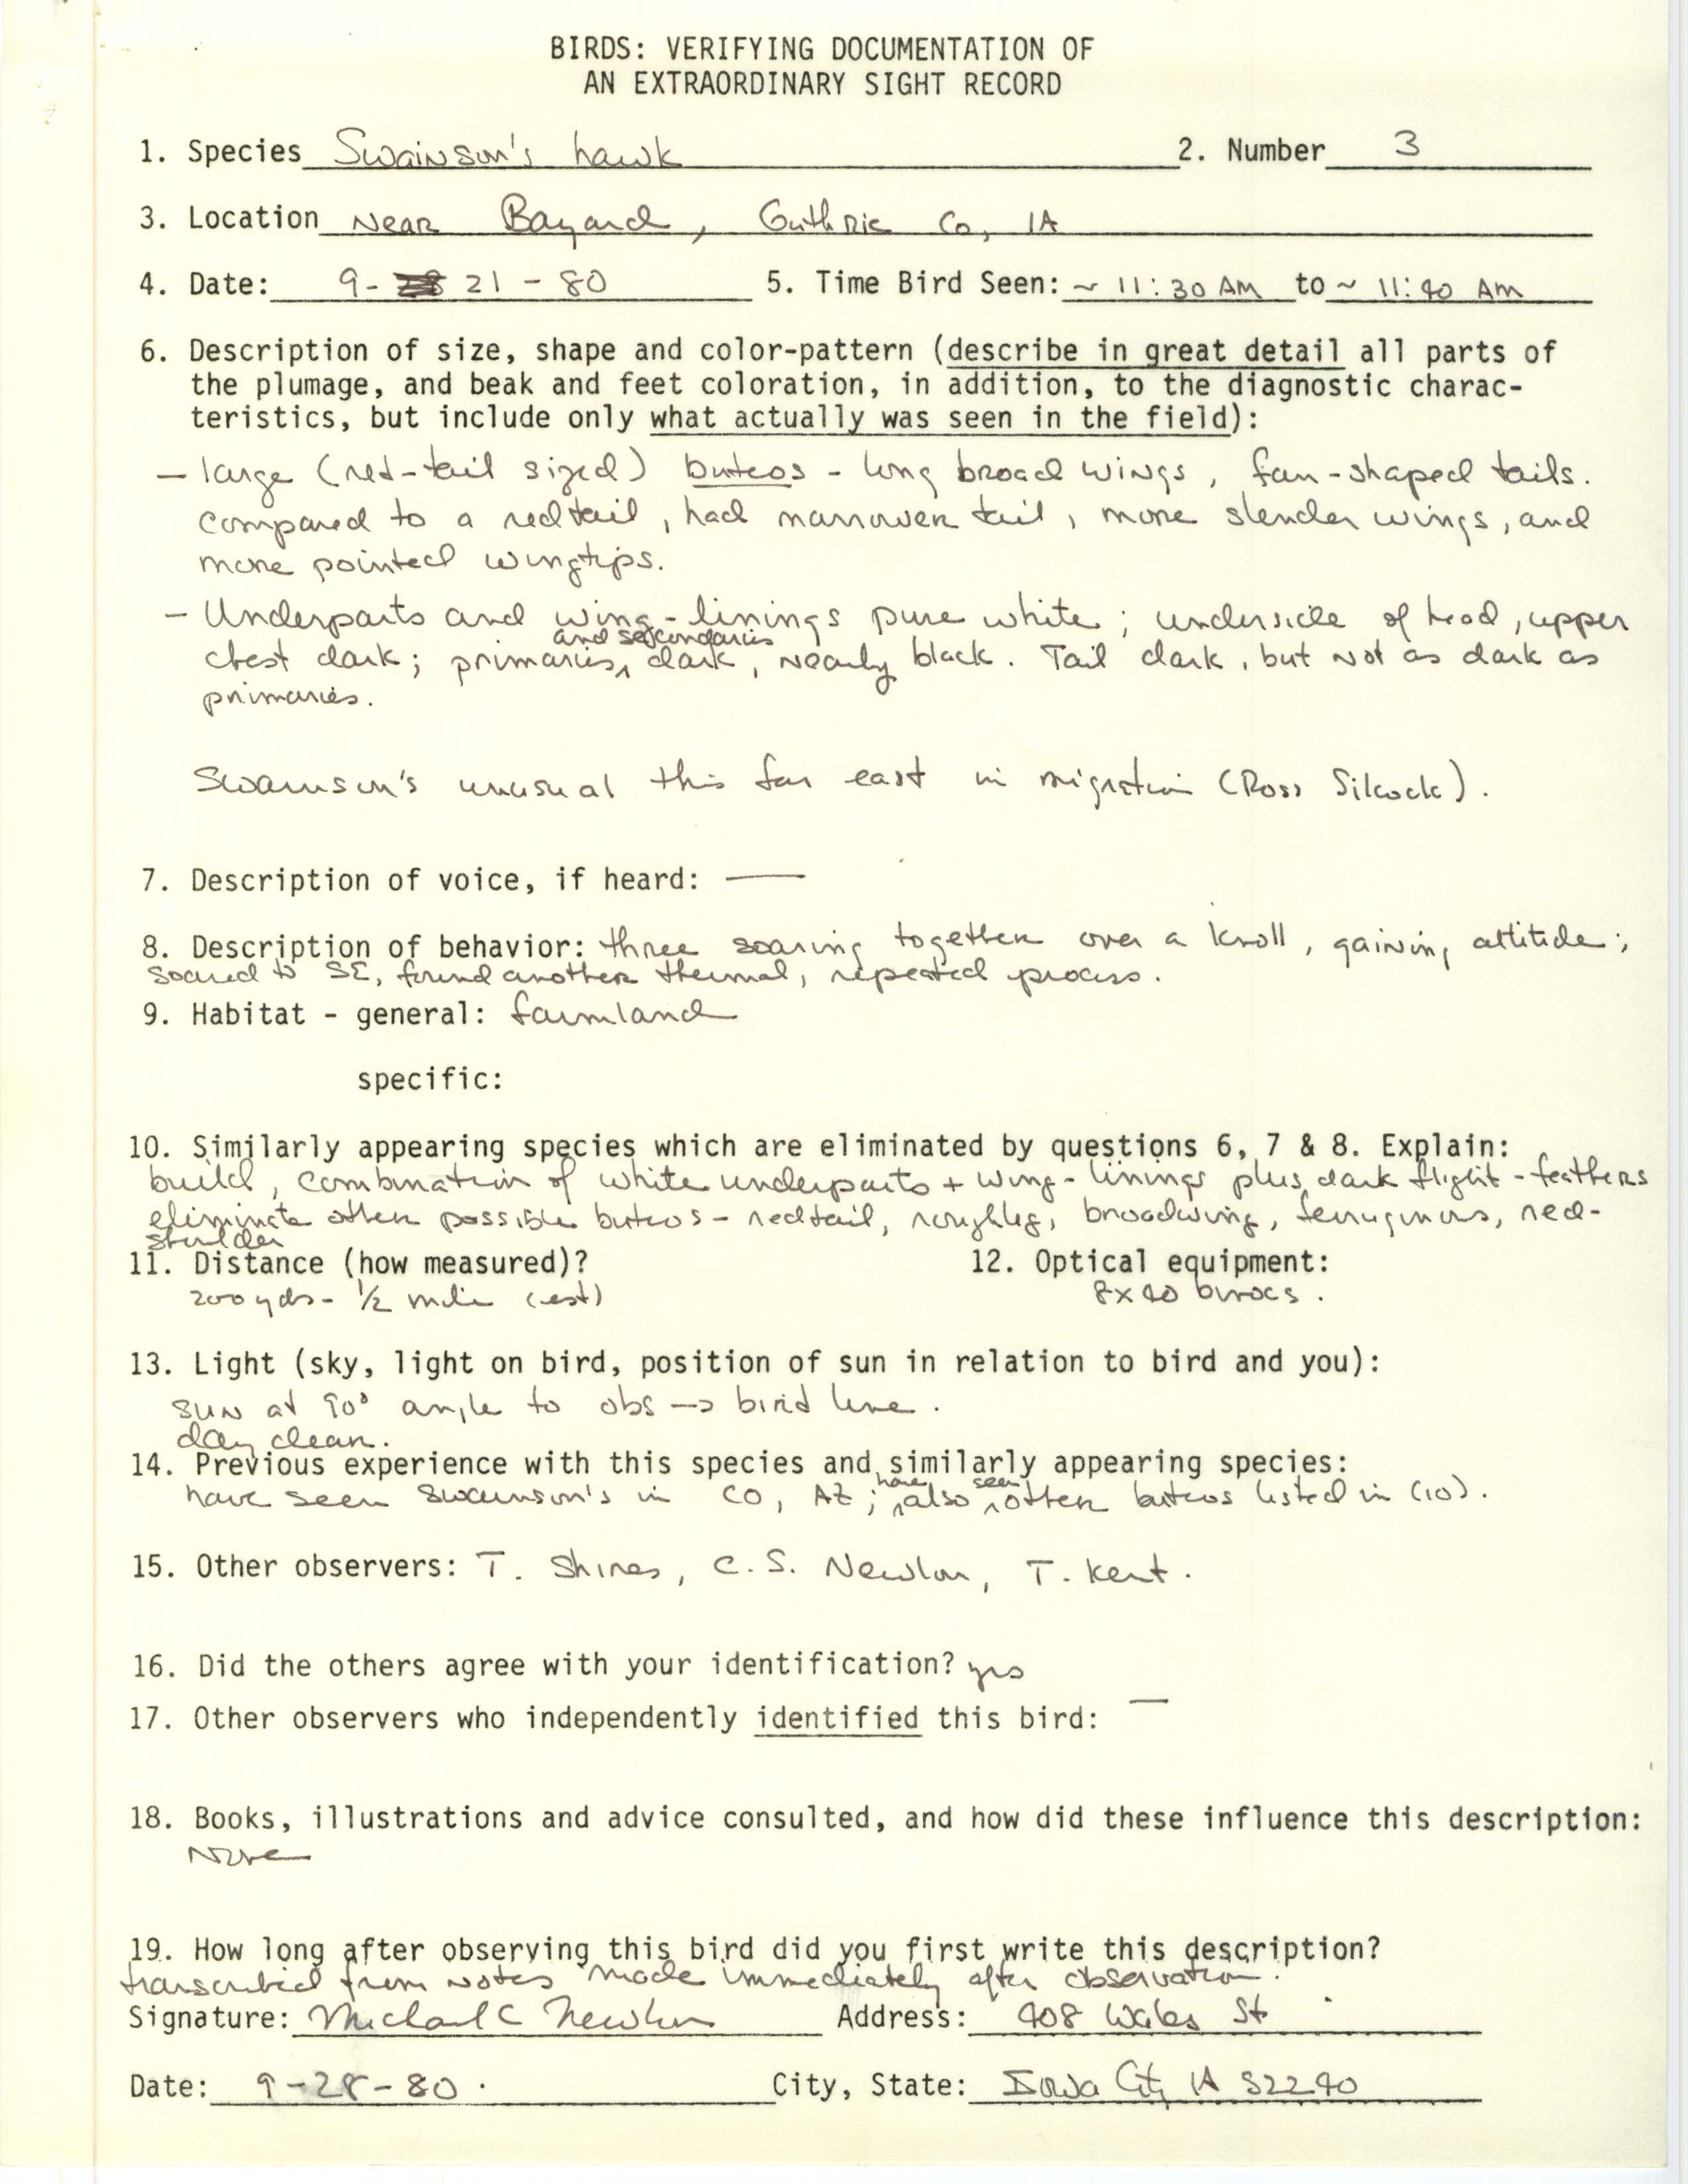 Rare bird documentation form for Swainson's Hawk at Bayard, 1980